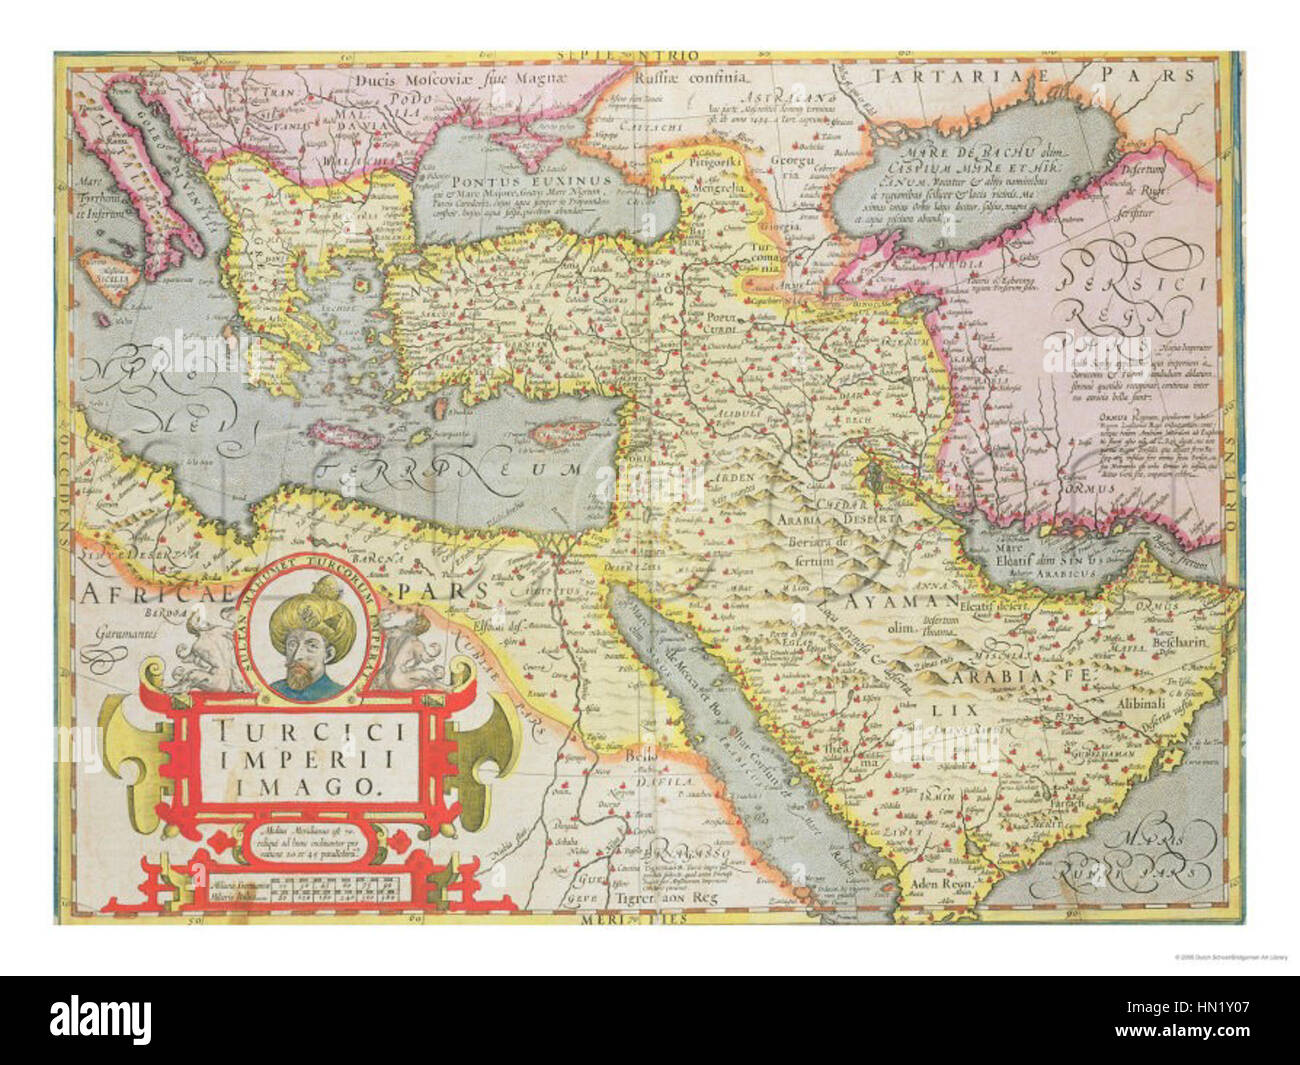 Carte de l'Empire turc, à partir de l'Atlas de Mercator publié par Jodocus Hondius Amsterdam, 1606 Banque D'Images